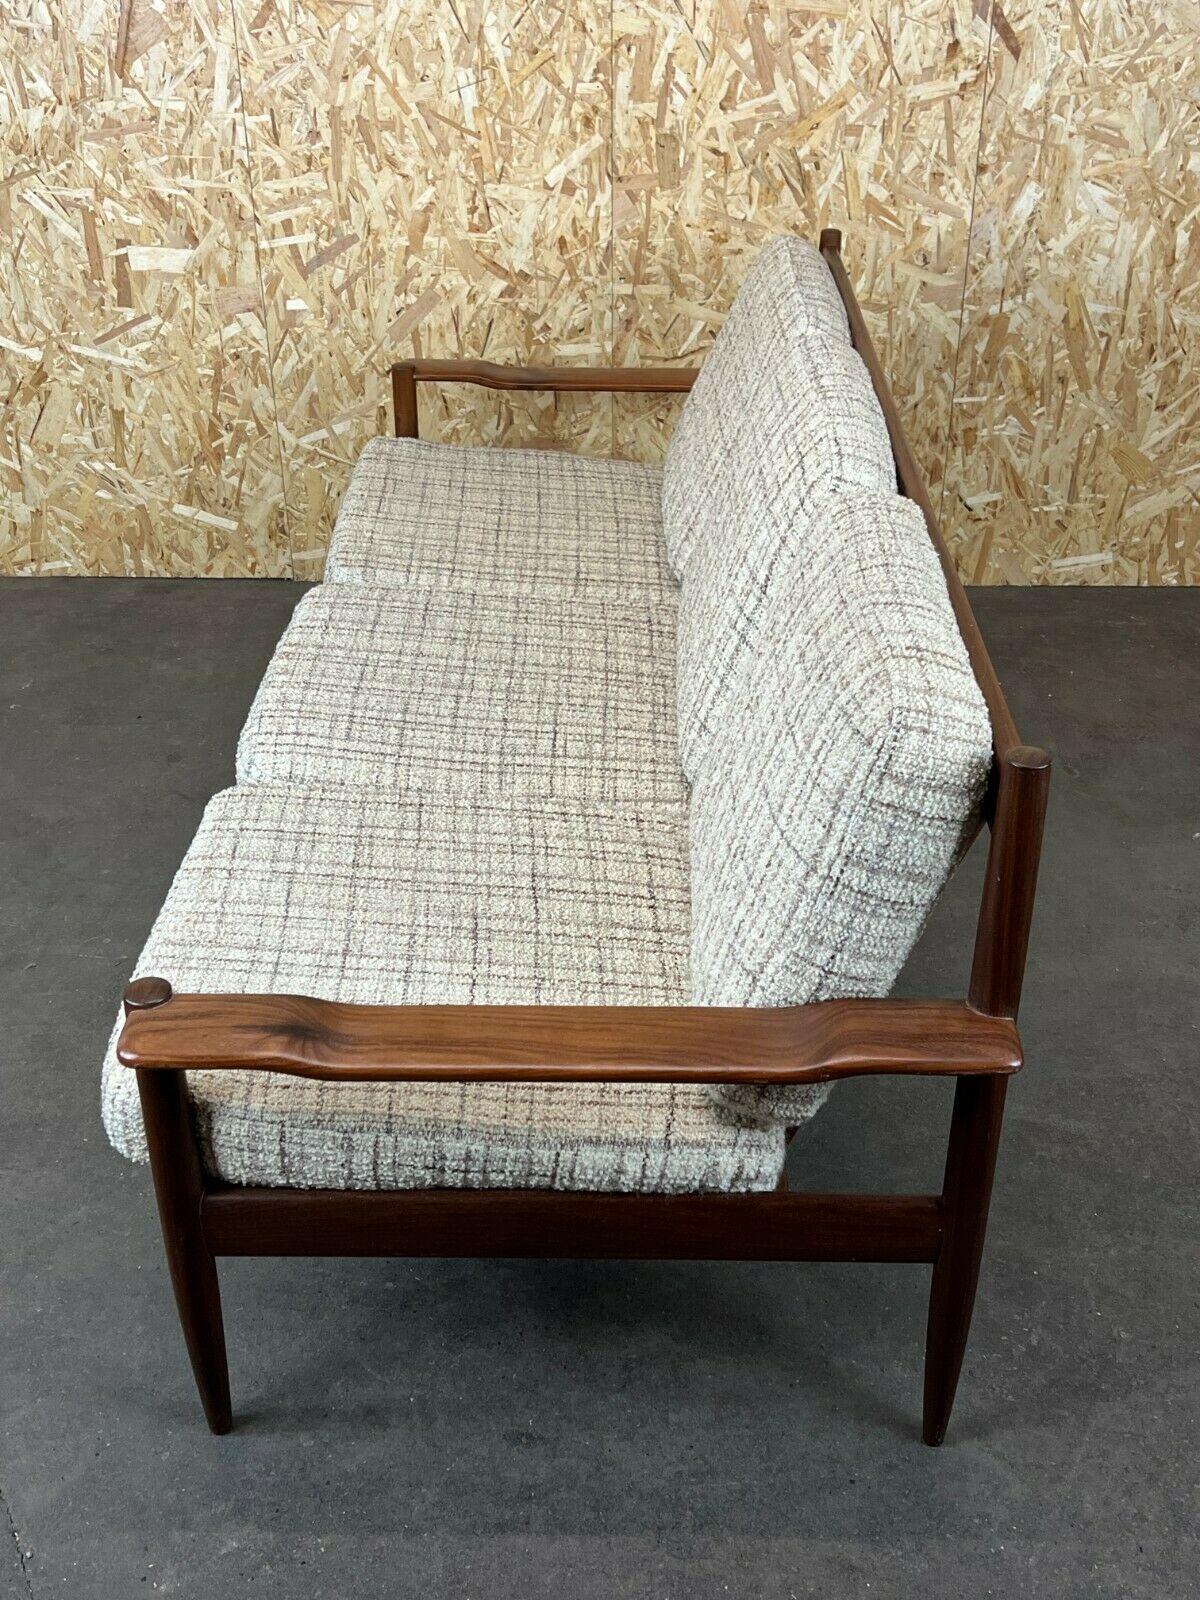 60s 70s Teak Sofa 3 Seater Couch Seating Set Danish Modern Design Denmark For Sale 2